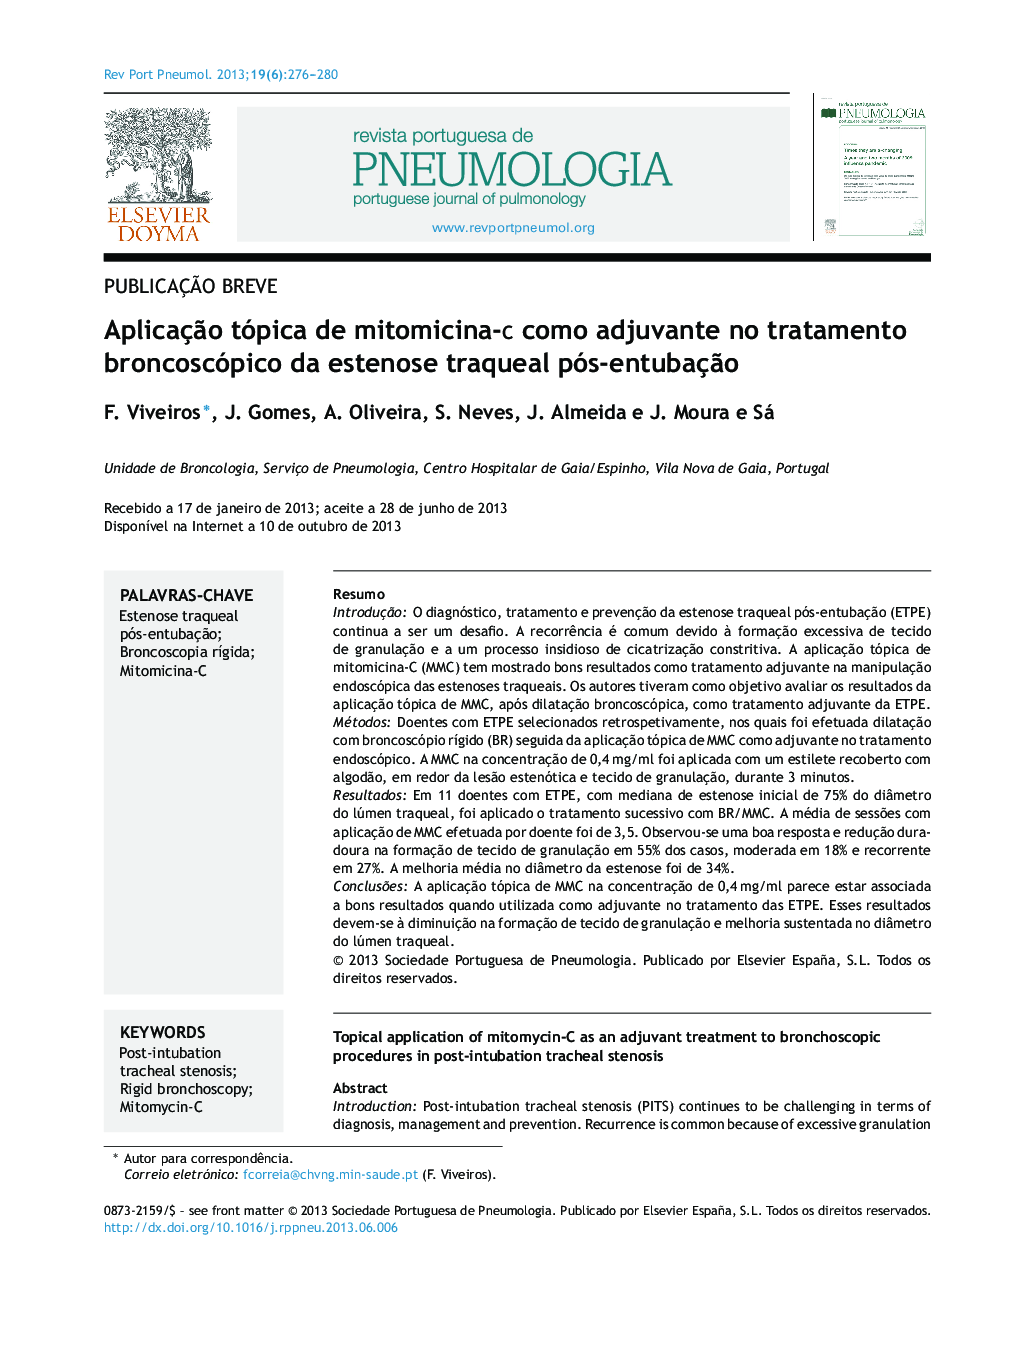 Aplicação tópica de mitomicina-C como adjuvante no tratamento broncoscópico da estenose traqueal pós-entubação